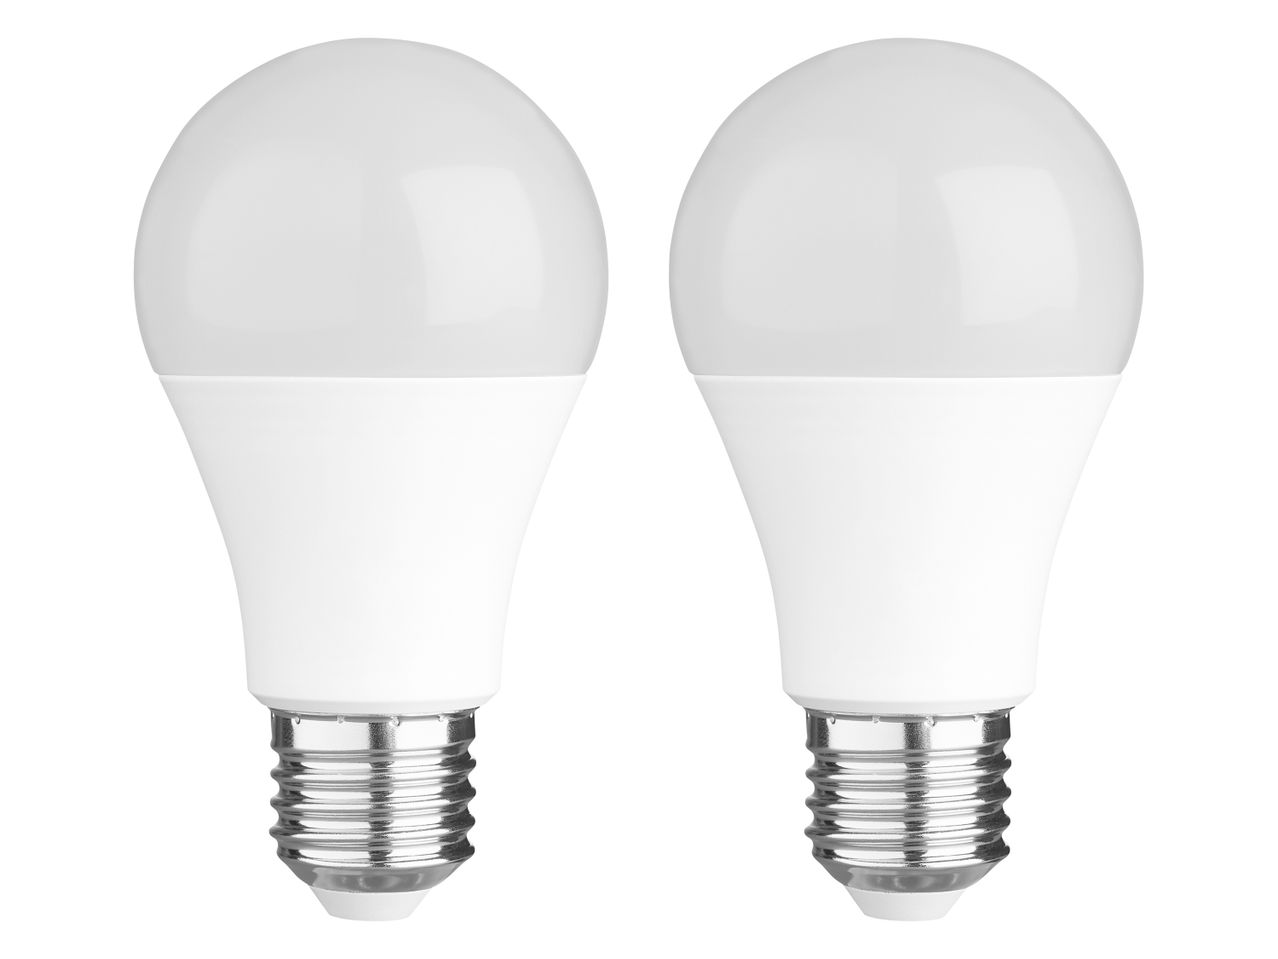 Lampadina LED , prezzo 3,49 EUR 
Lampadina LED 2 o 3 pezzi 
- Bianco caldo
A scelta ...